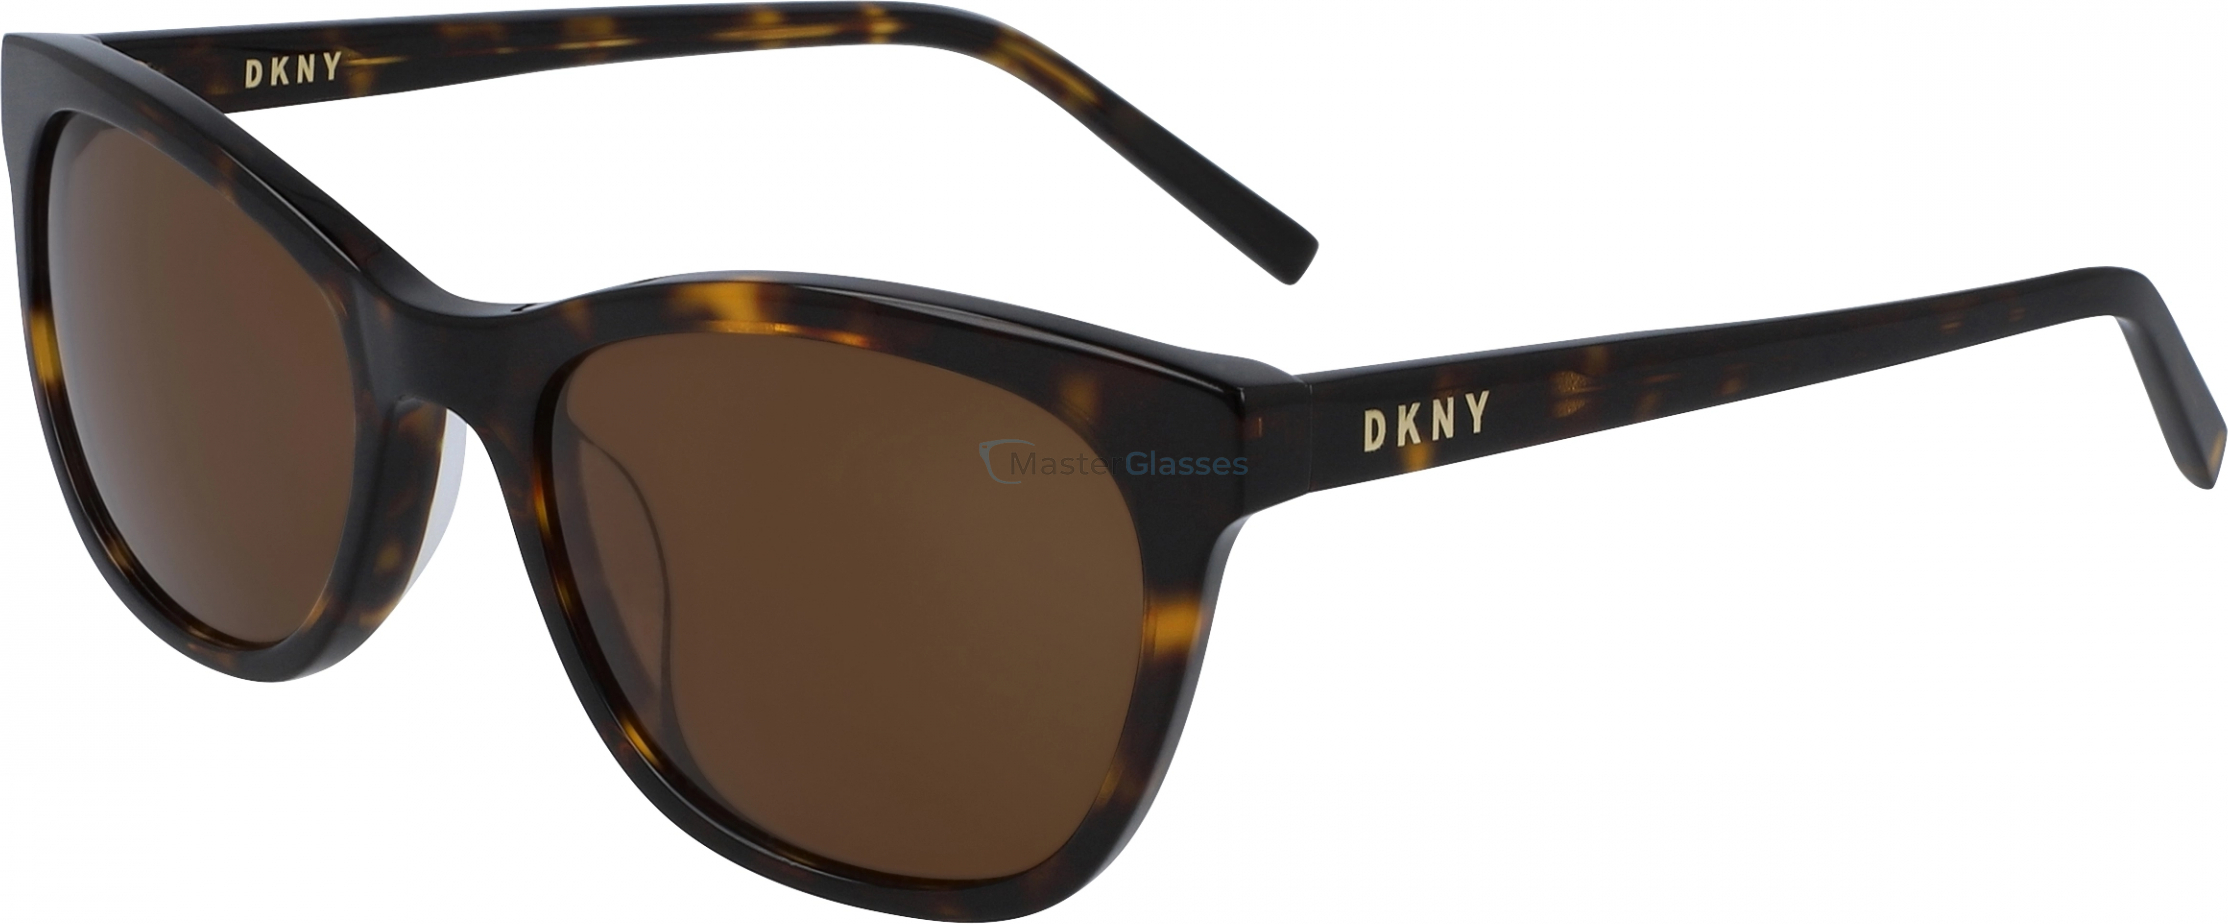   DKNY DK502S 237,  DARK TORTOISE, BROWN